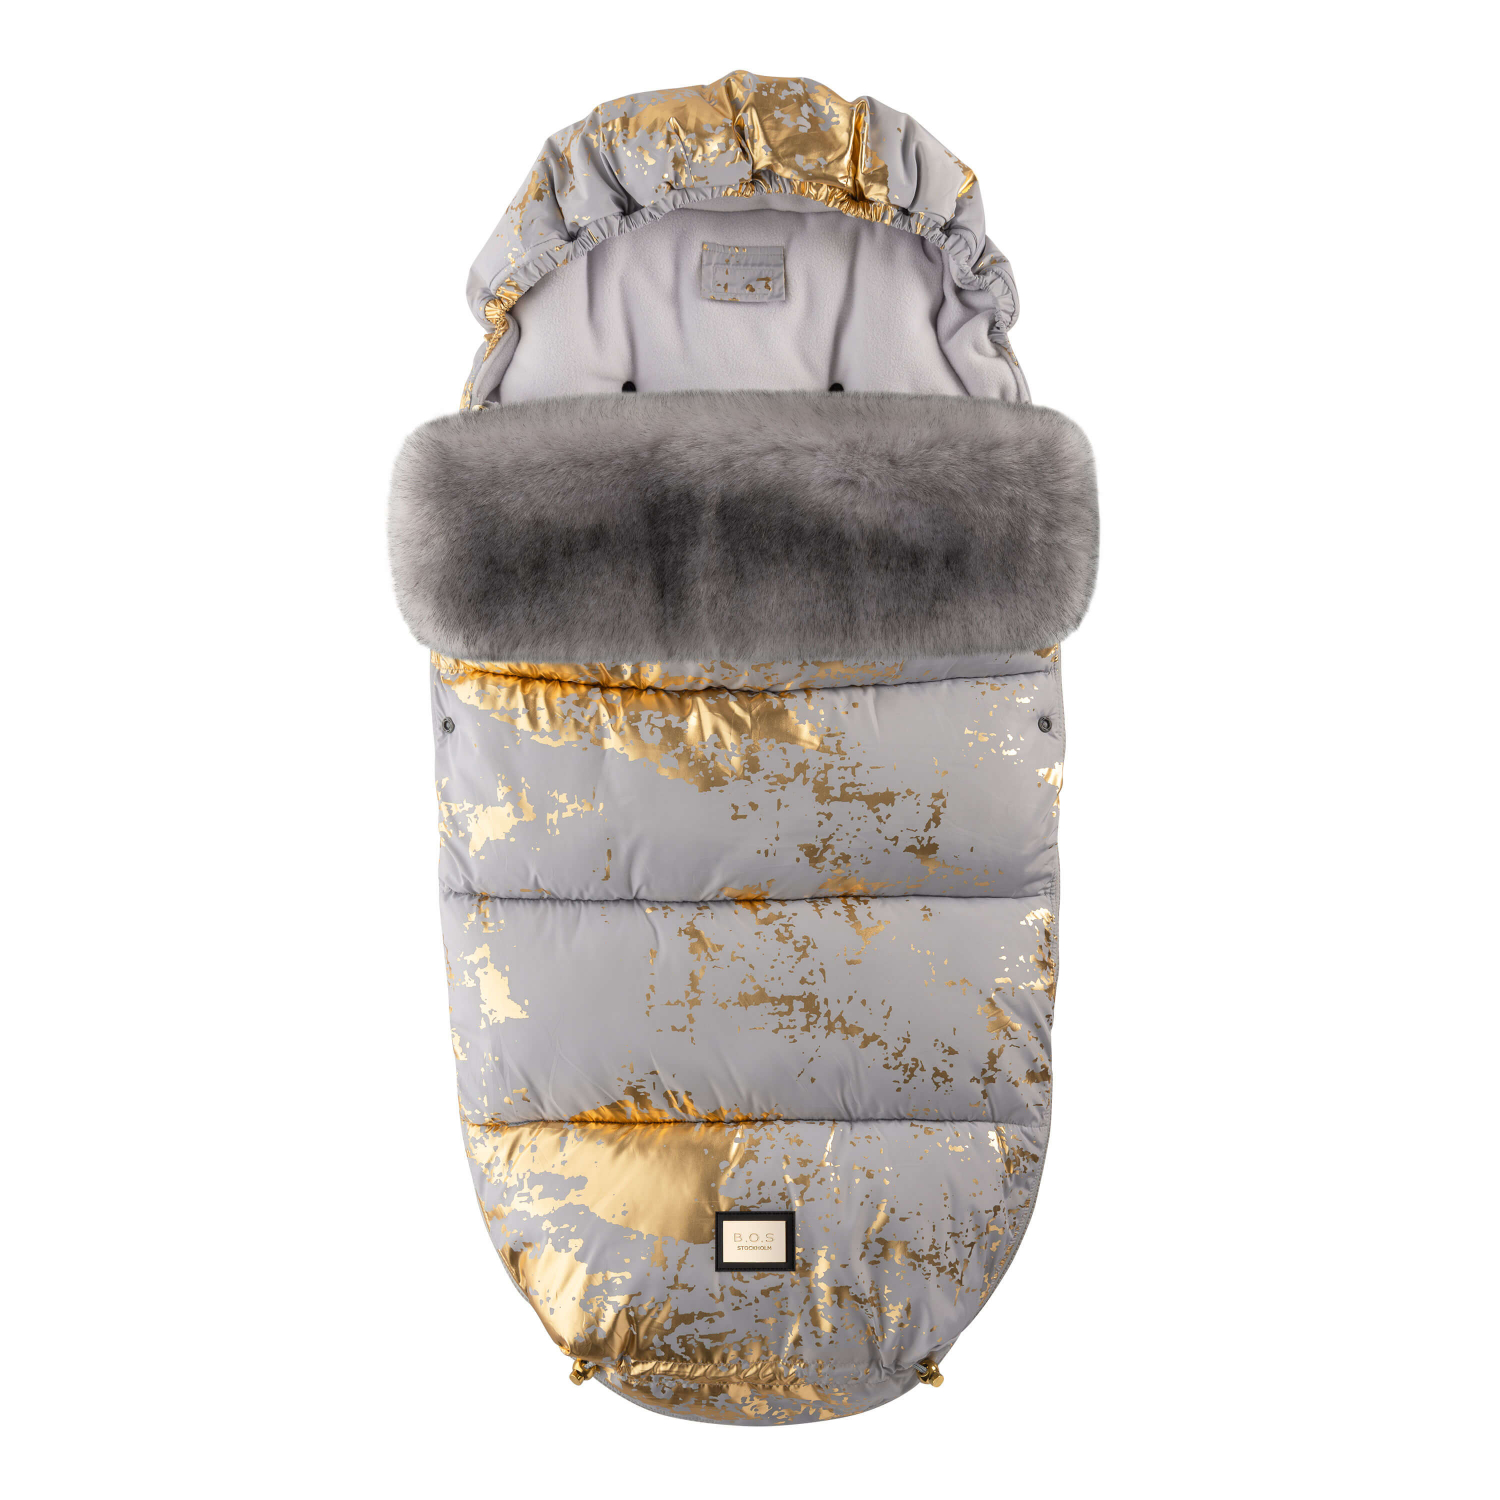 Luxus-Fußsack grau mit goldenen Details